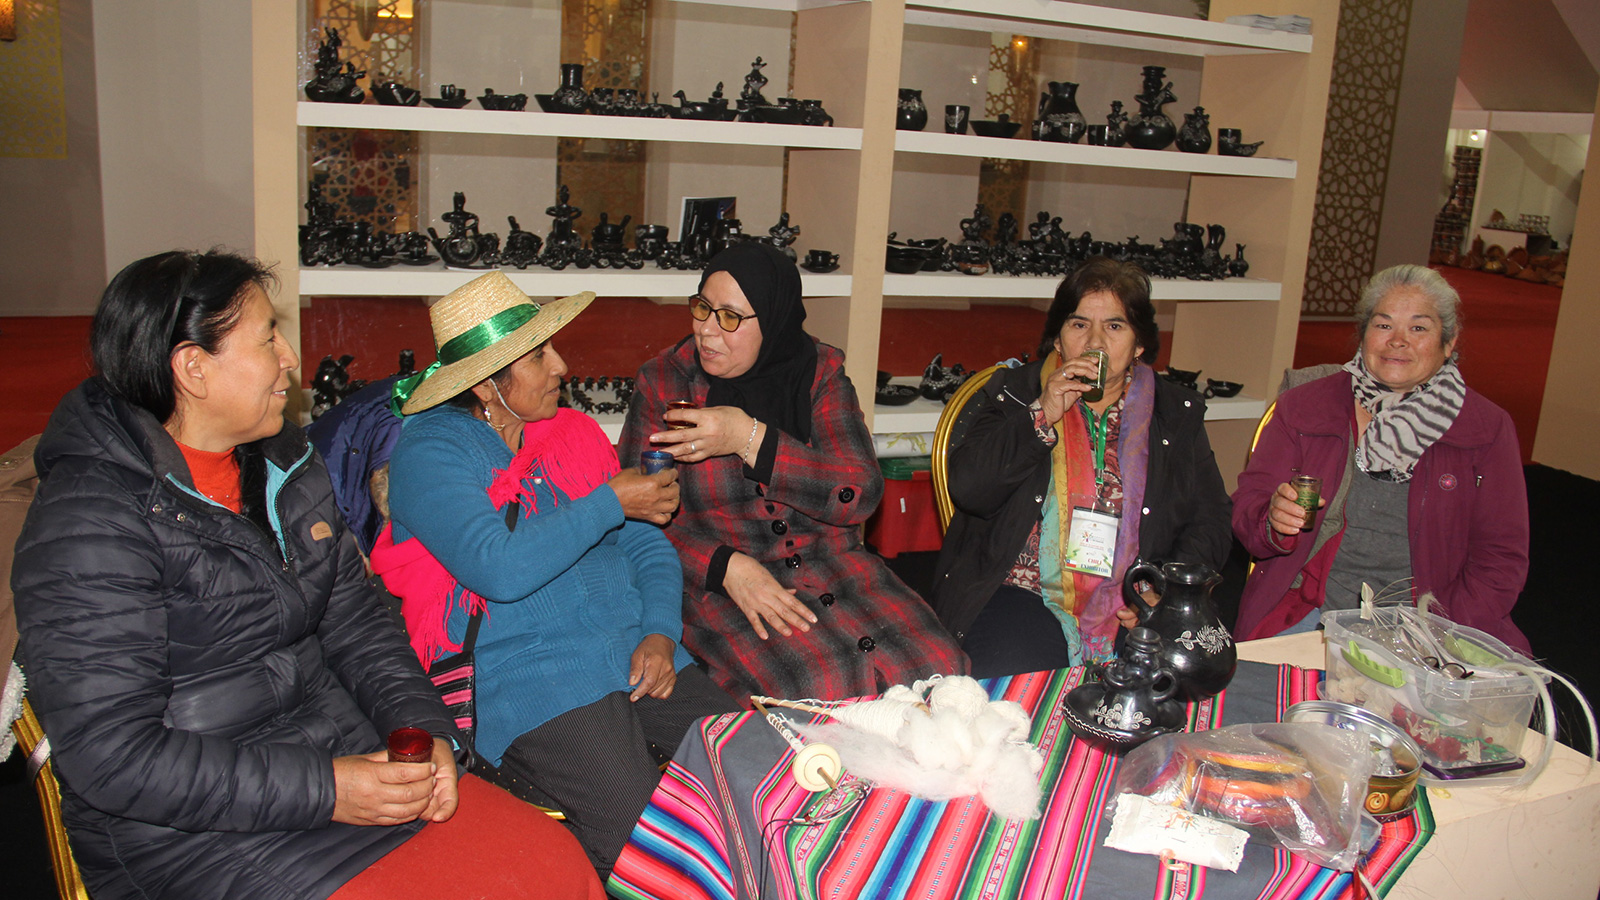 ‪نساجات من المغرب وتشيلي يستمتعن بشرب الشاي المغربي بعد نهاية الورشة ويأملن بلقاء جديد‬ (الجزيرة)